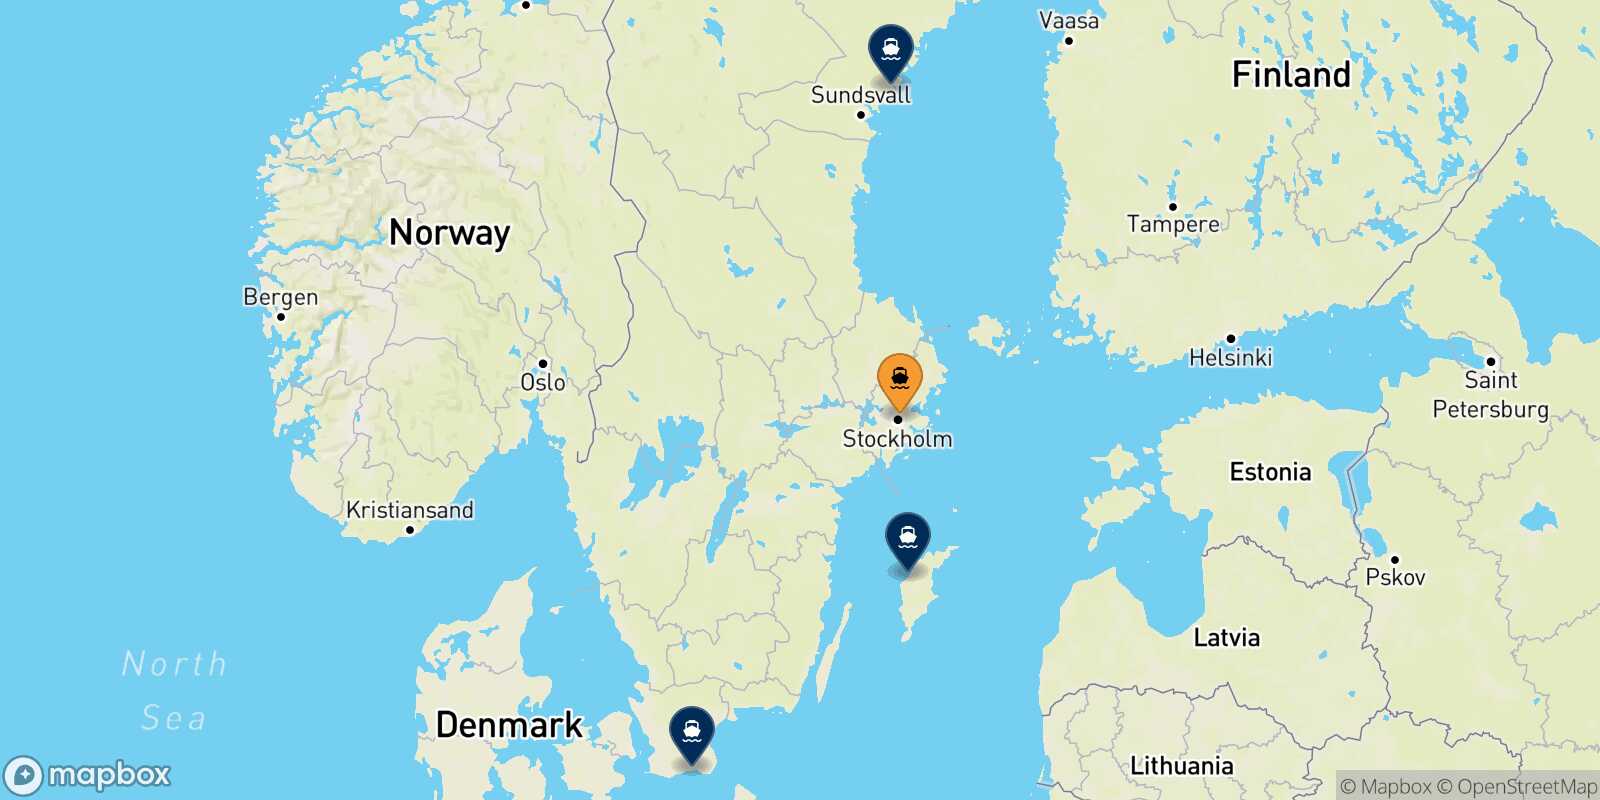 Mappa delle destinazioni raggiungibili da Stoccolma